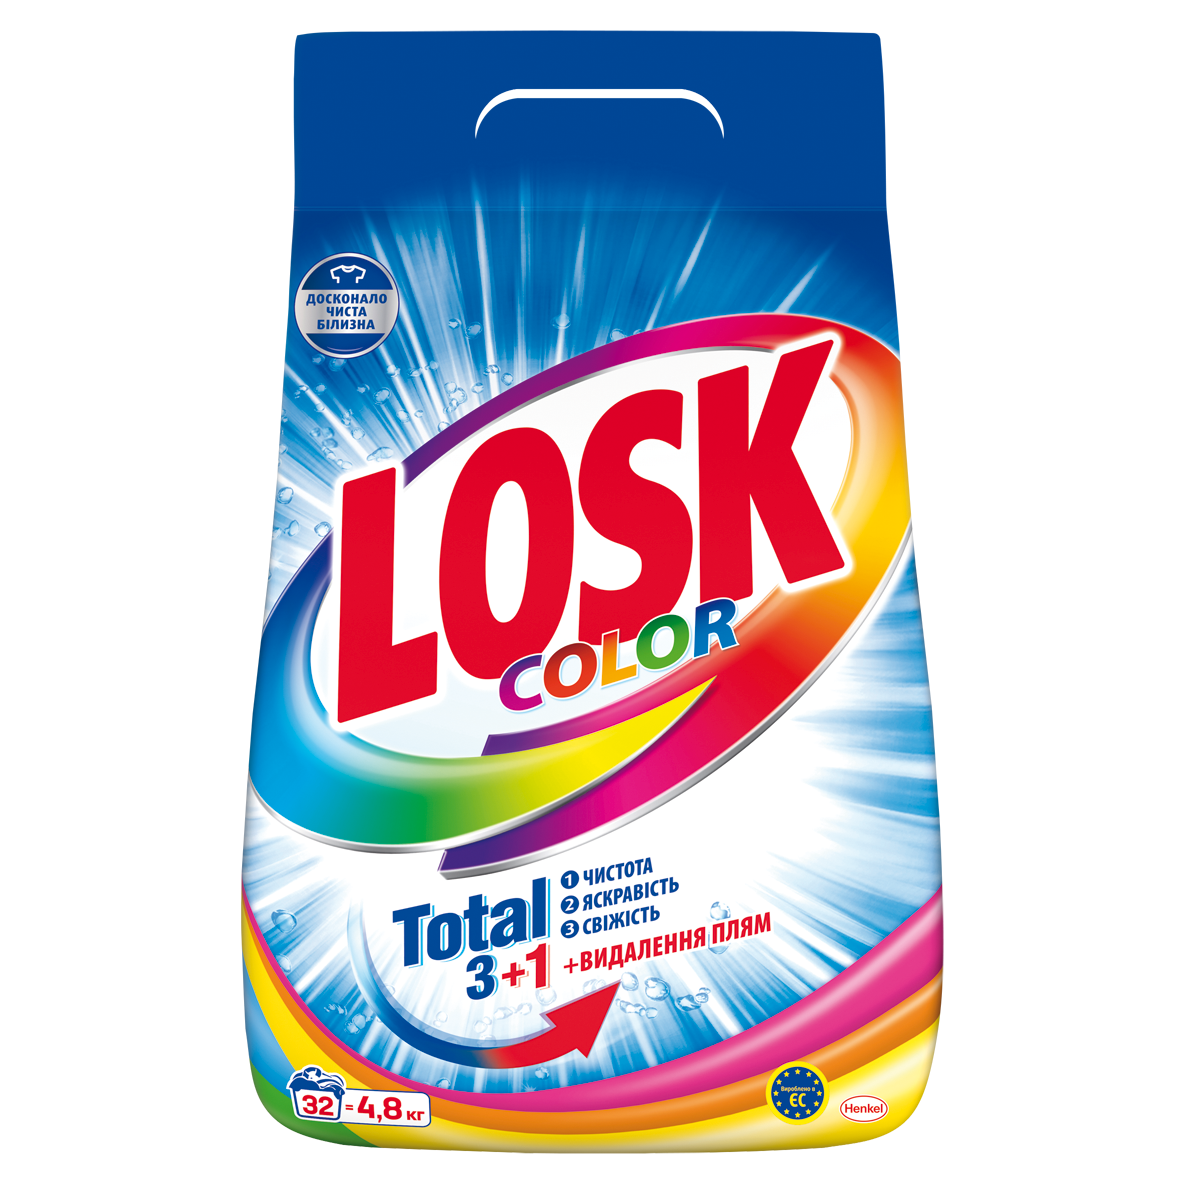 Порошок Losk, для цветных вещей, 4,800 кг (907720) - фото 1